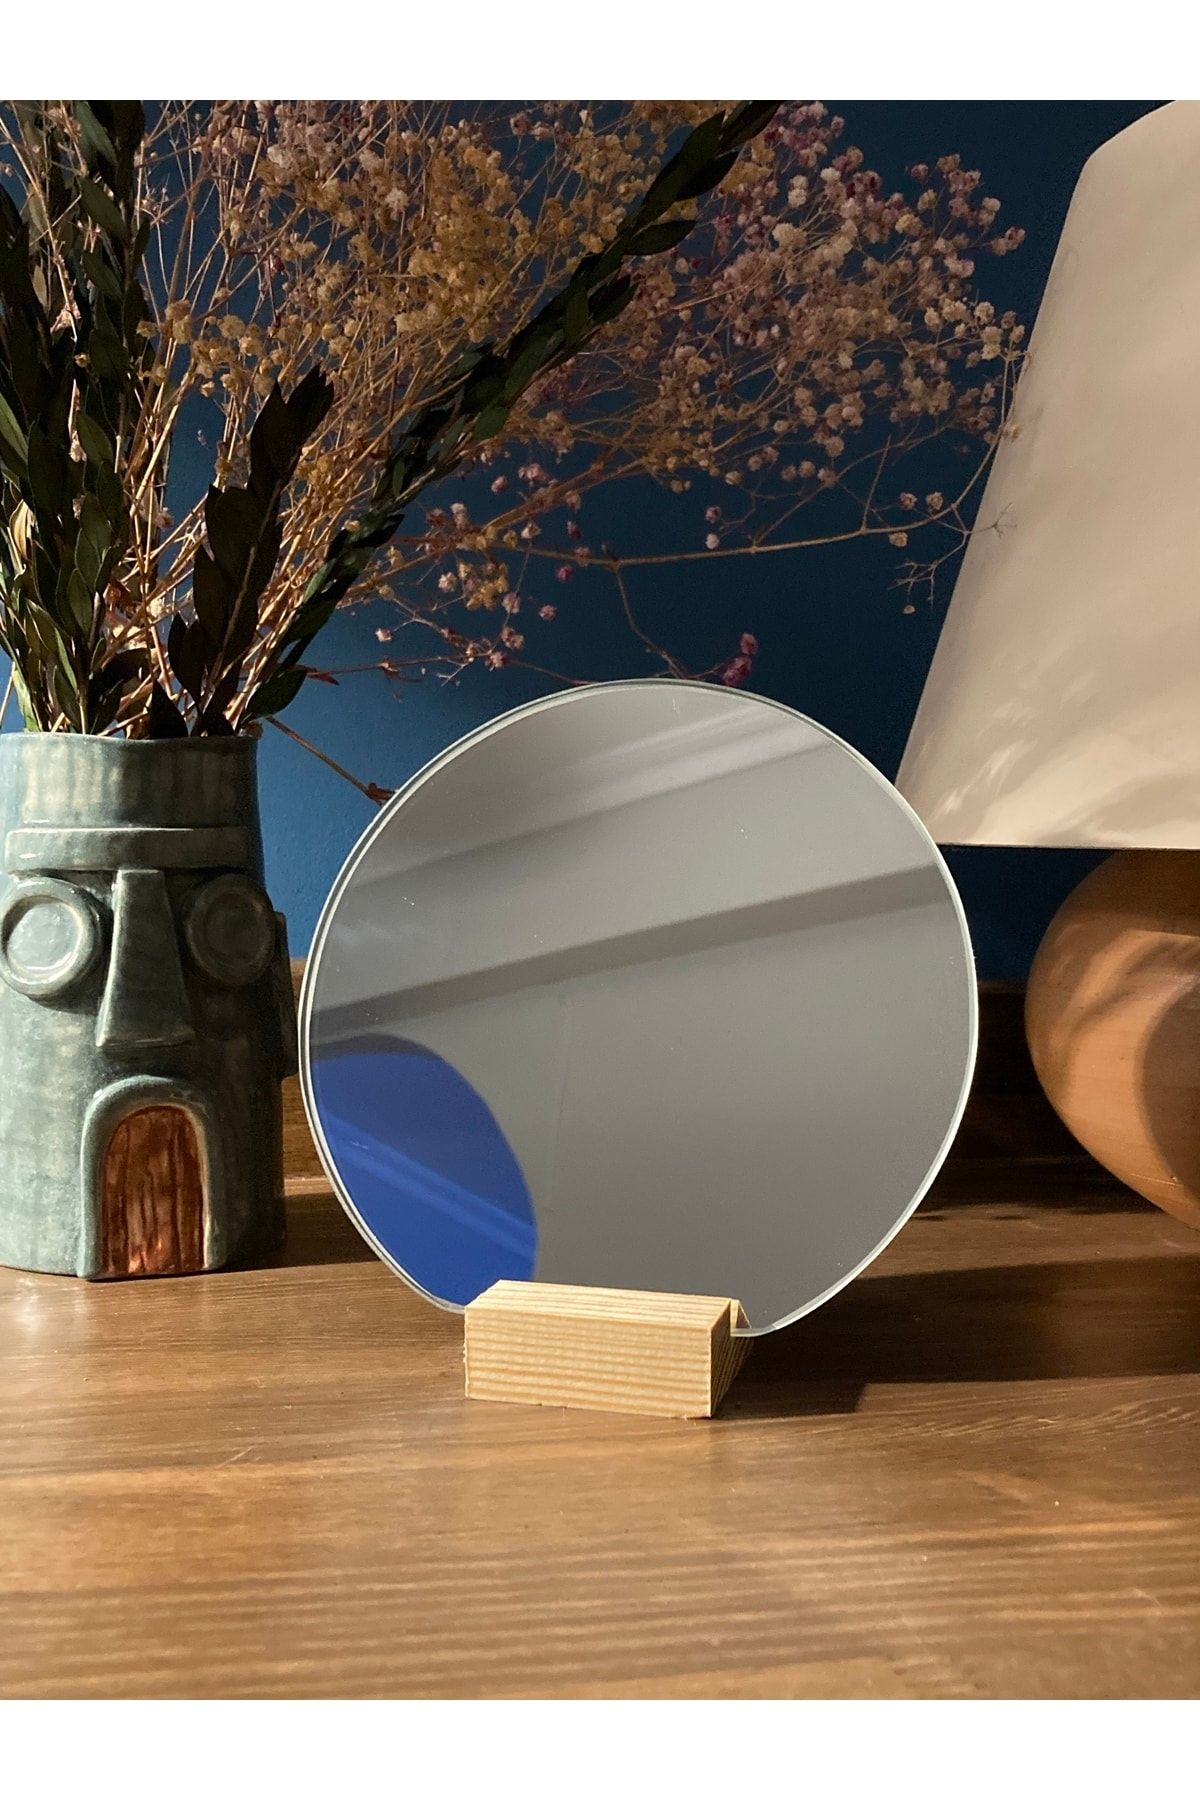 Home Art Nova Çerçevesiz Standlı Makyaj Aynası Duvar Aynası Masa Aynası Dekoratif Obje